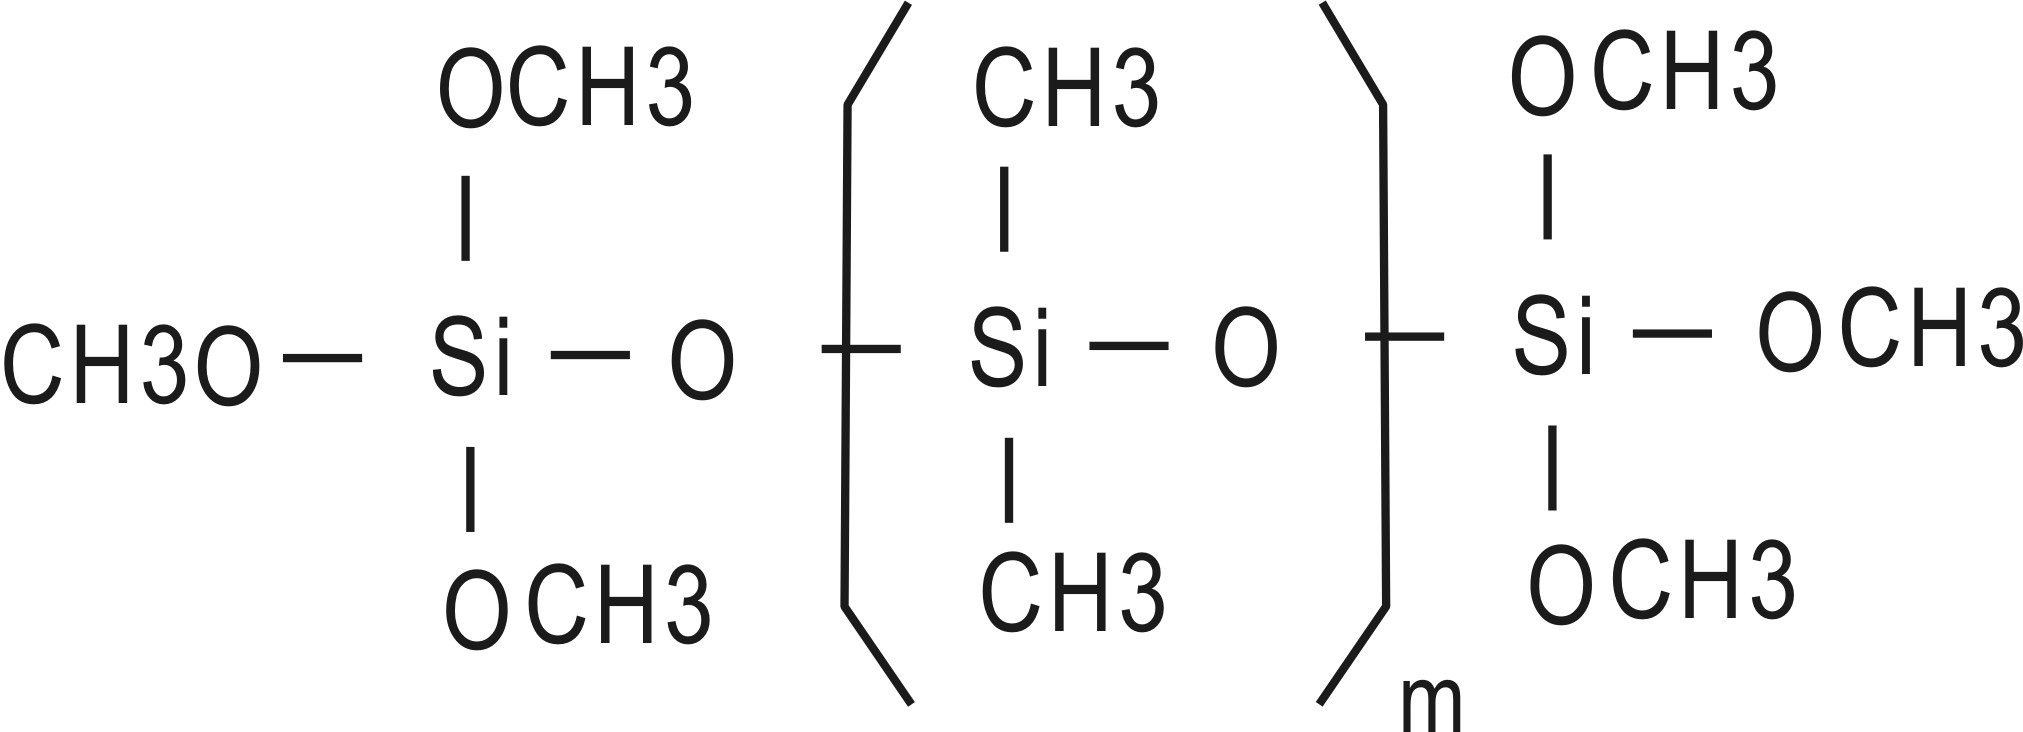 alkoxy polymer trimethoxy terminated